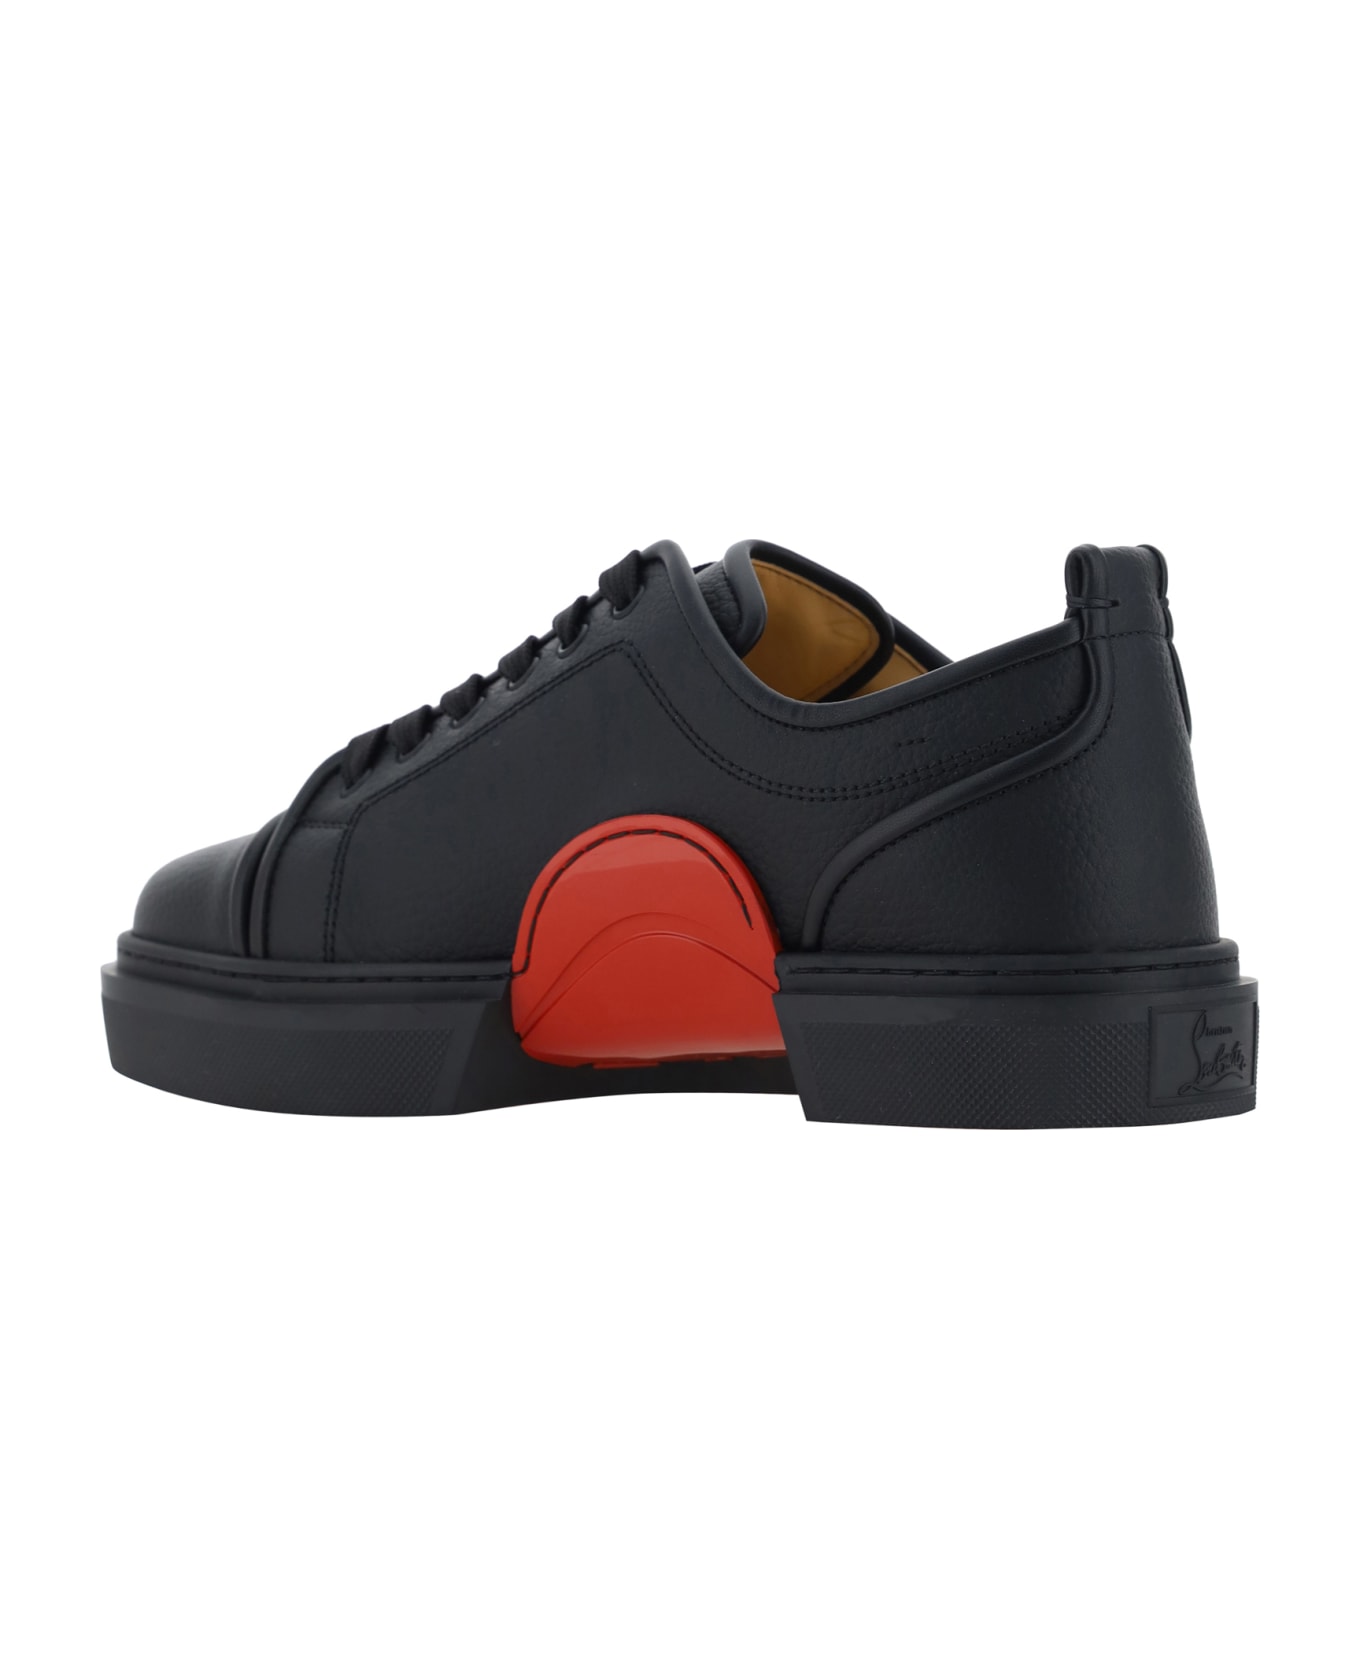 Christian Louboutin Adolon Kunior Sneakers - Black